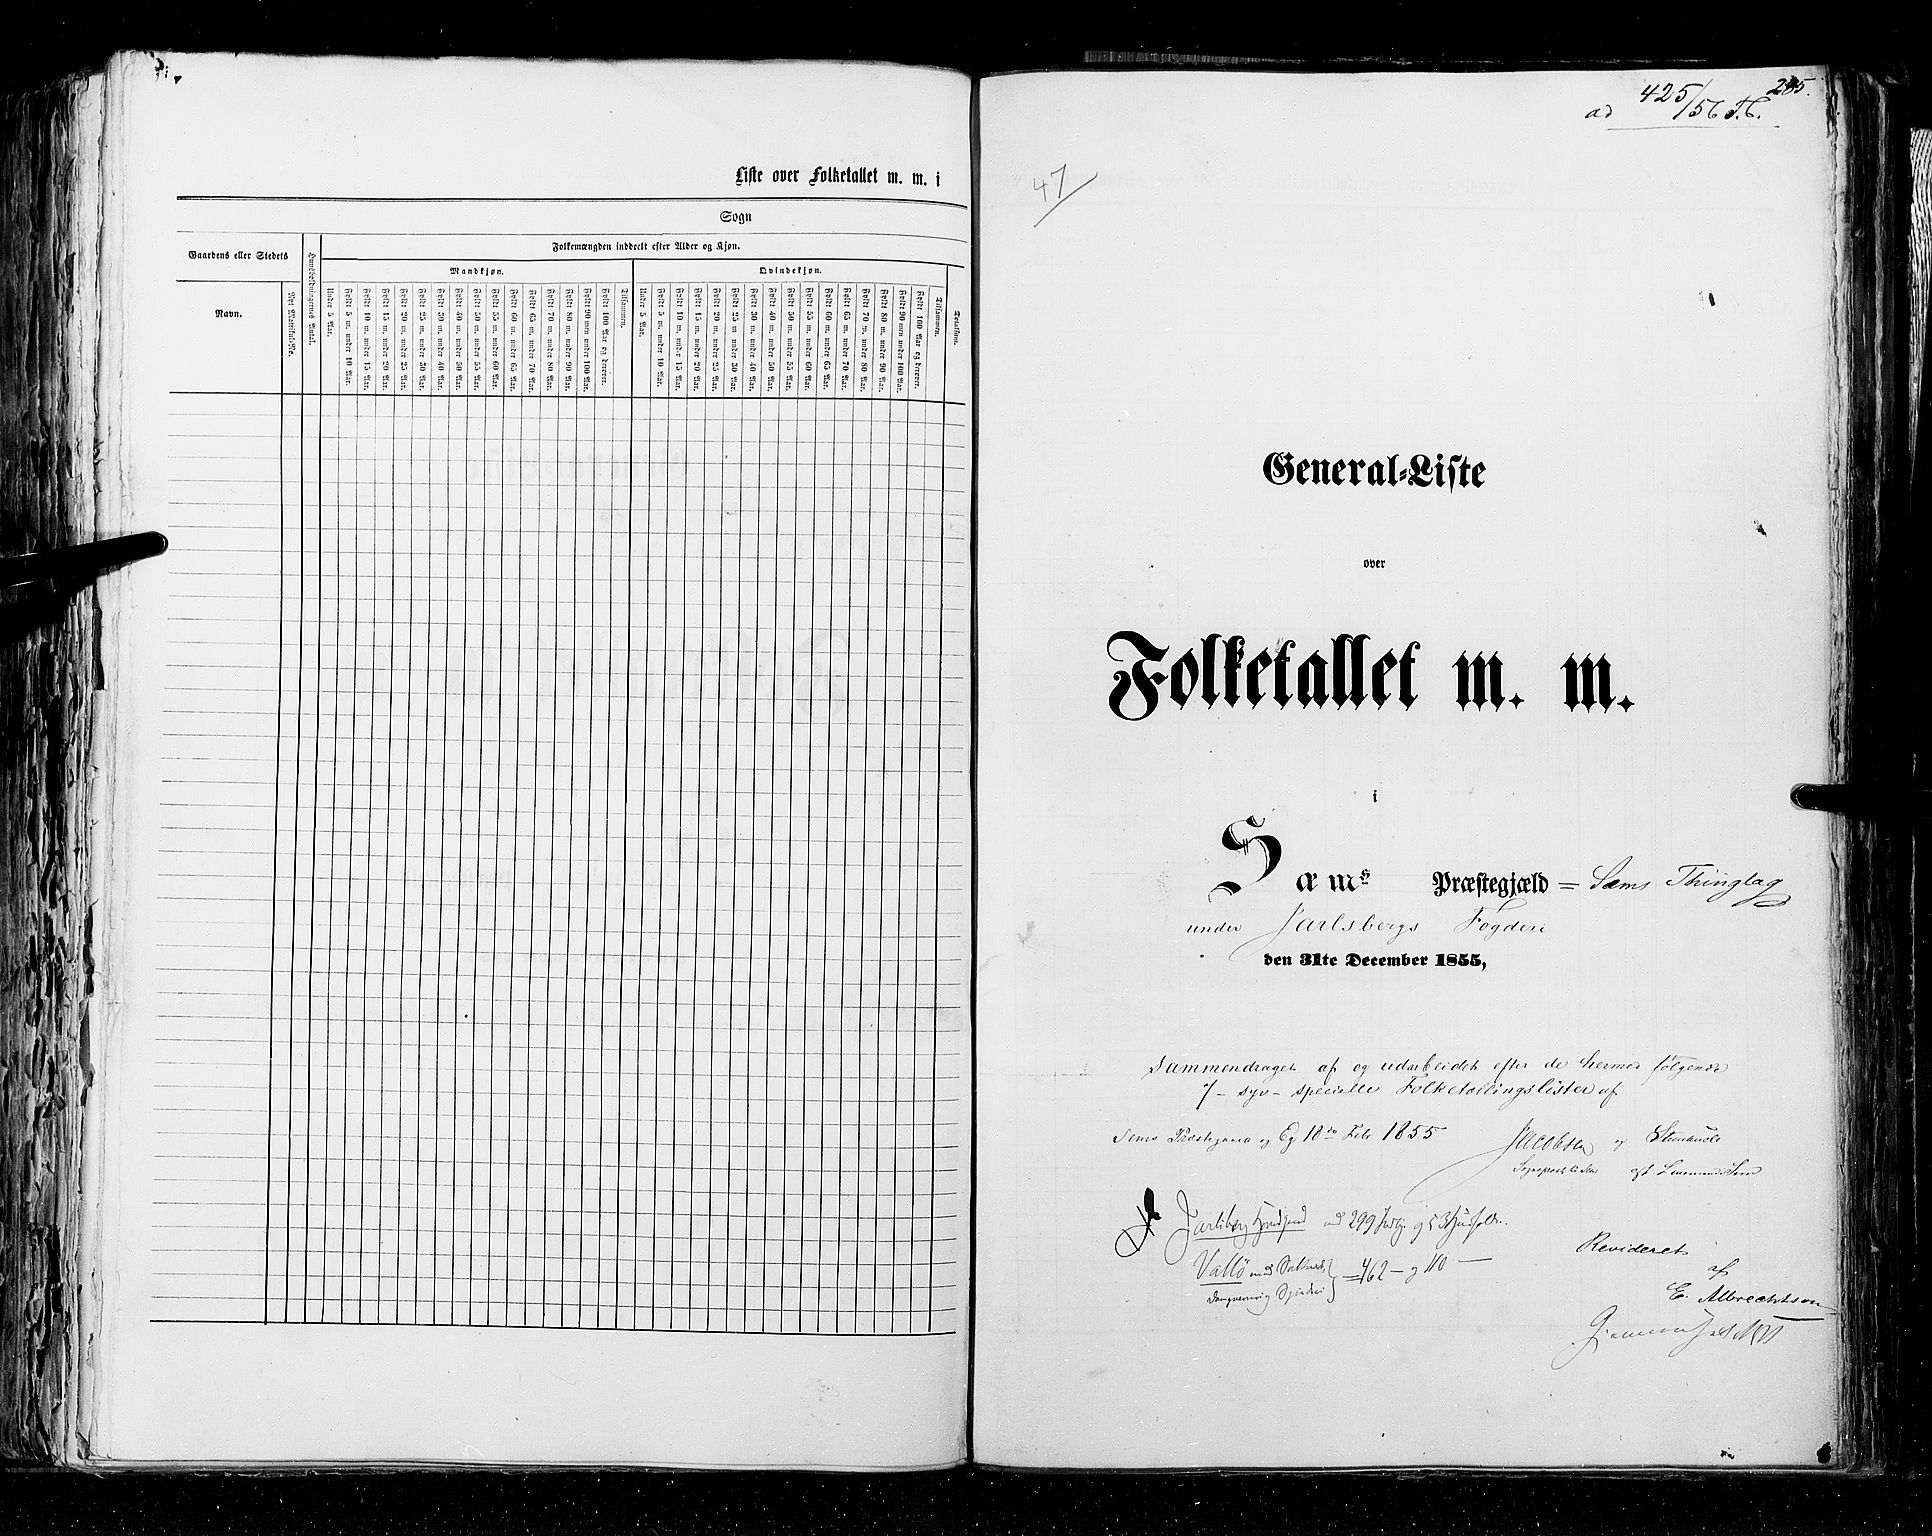 RA, Census 1855, vol. 2: Kristians amt, Buskerud amt og Jarlsberg og Larvik amt, 1855, p. 285